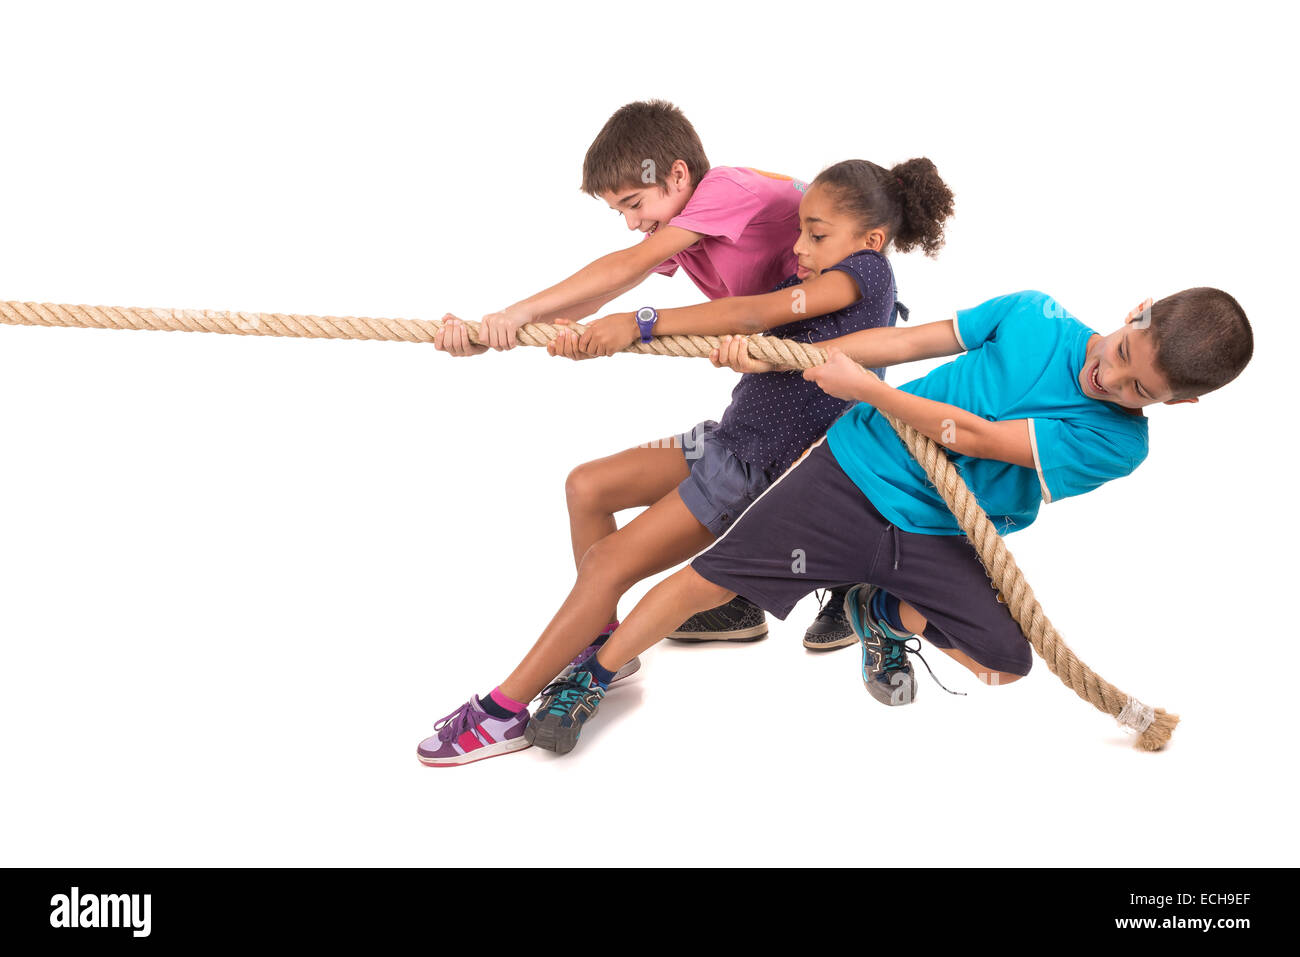 Gruppe von Kindern an einem Seil ziehen Wettbewerb Stockfotografie - Alamy